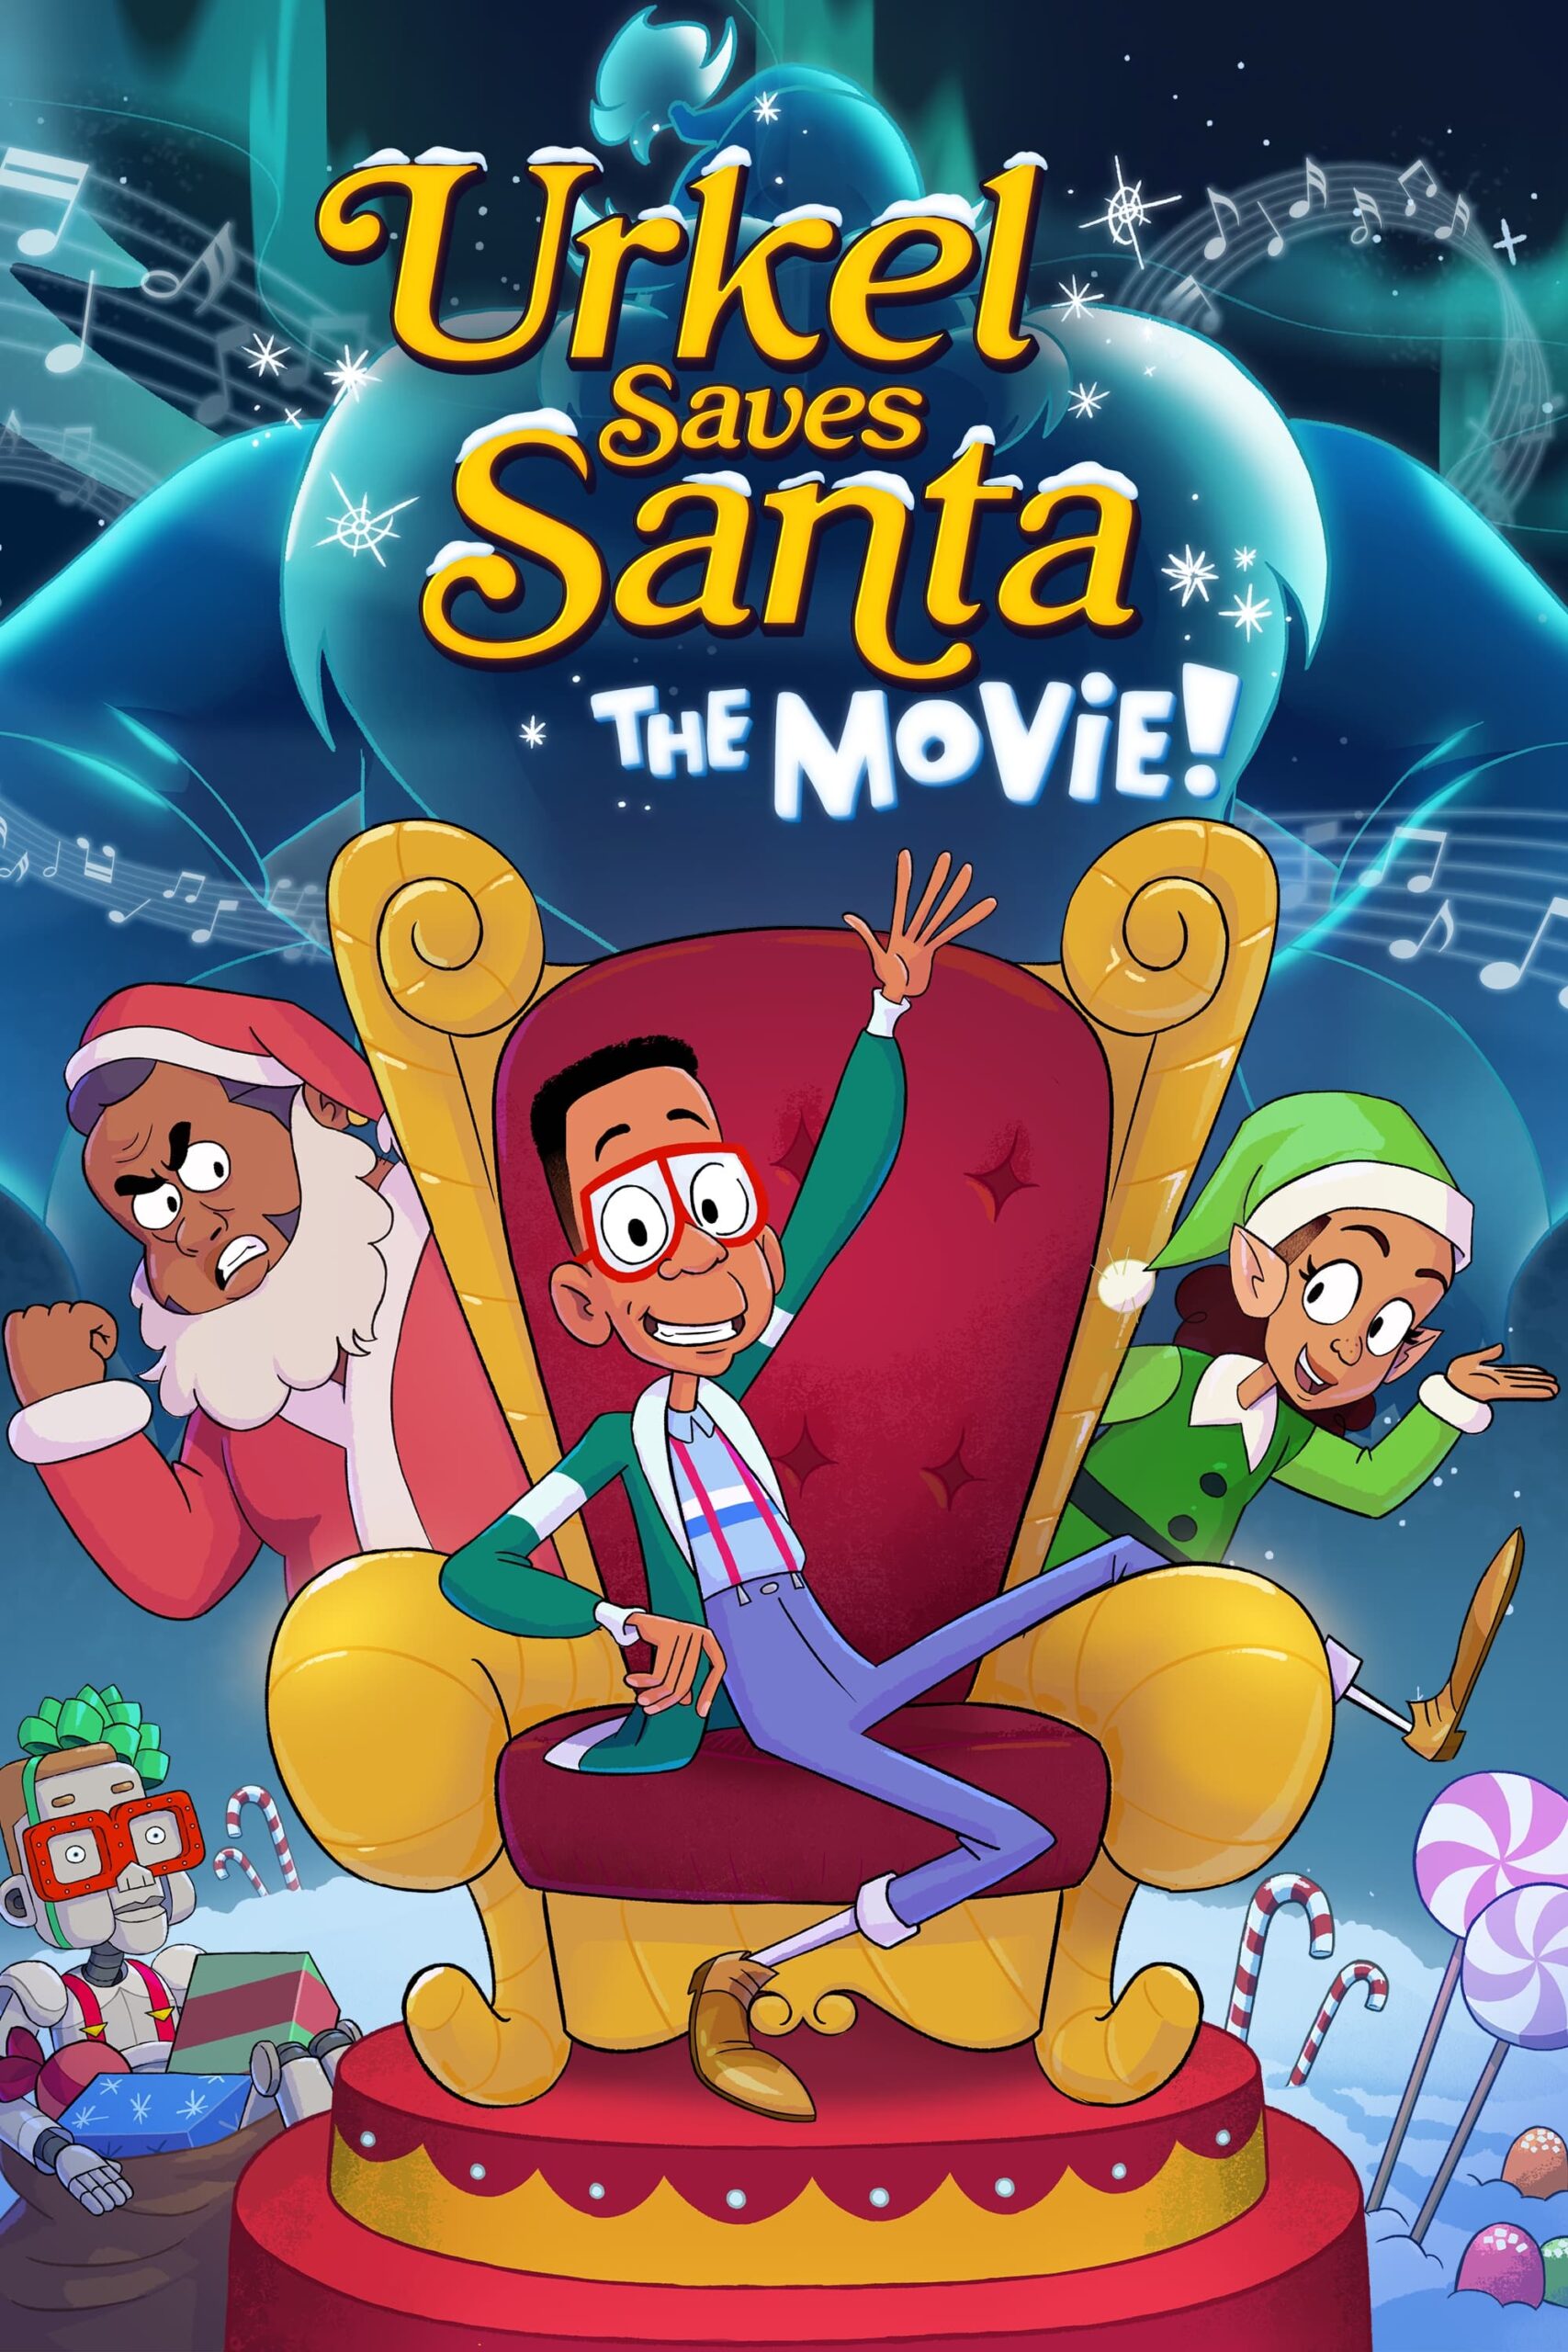 اورکل فیلم بابا نوئل را نجات می دهد (Urkel Saves Santa: The Movie!)